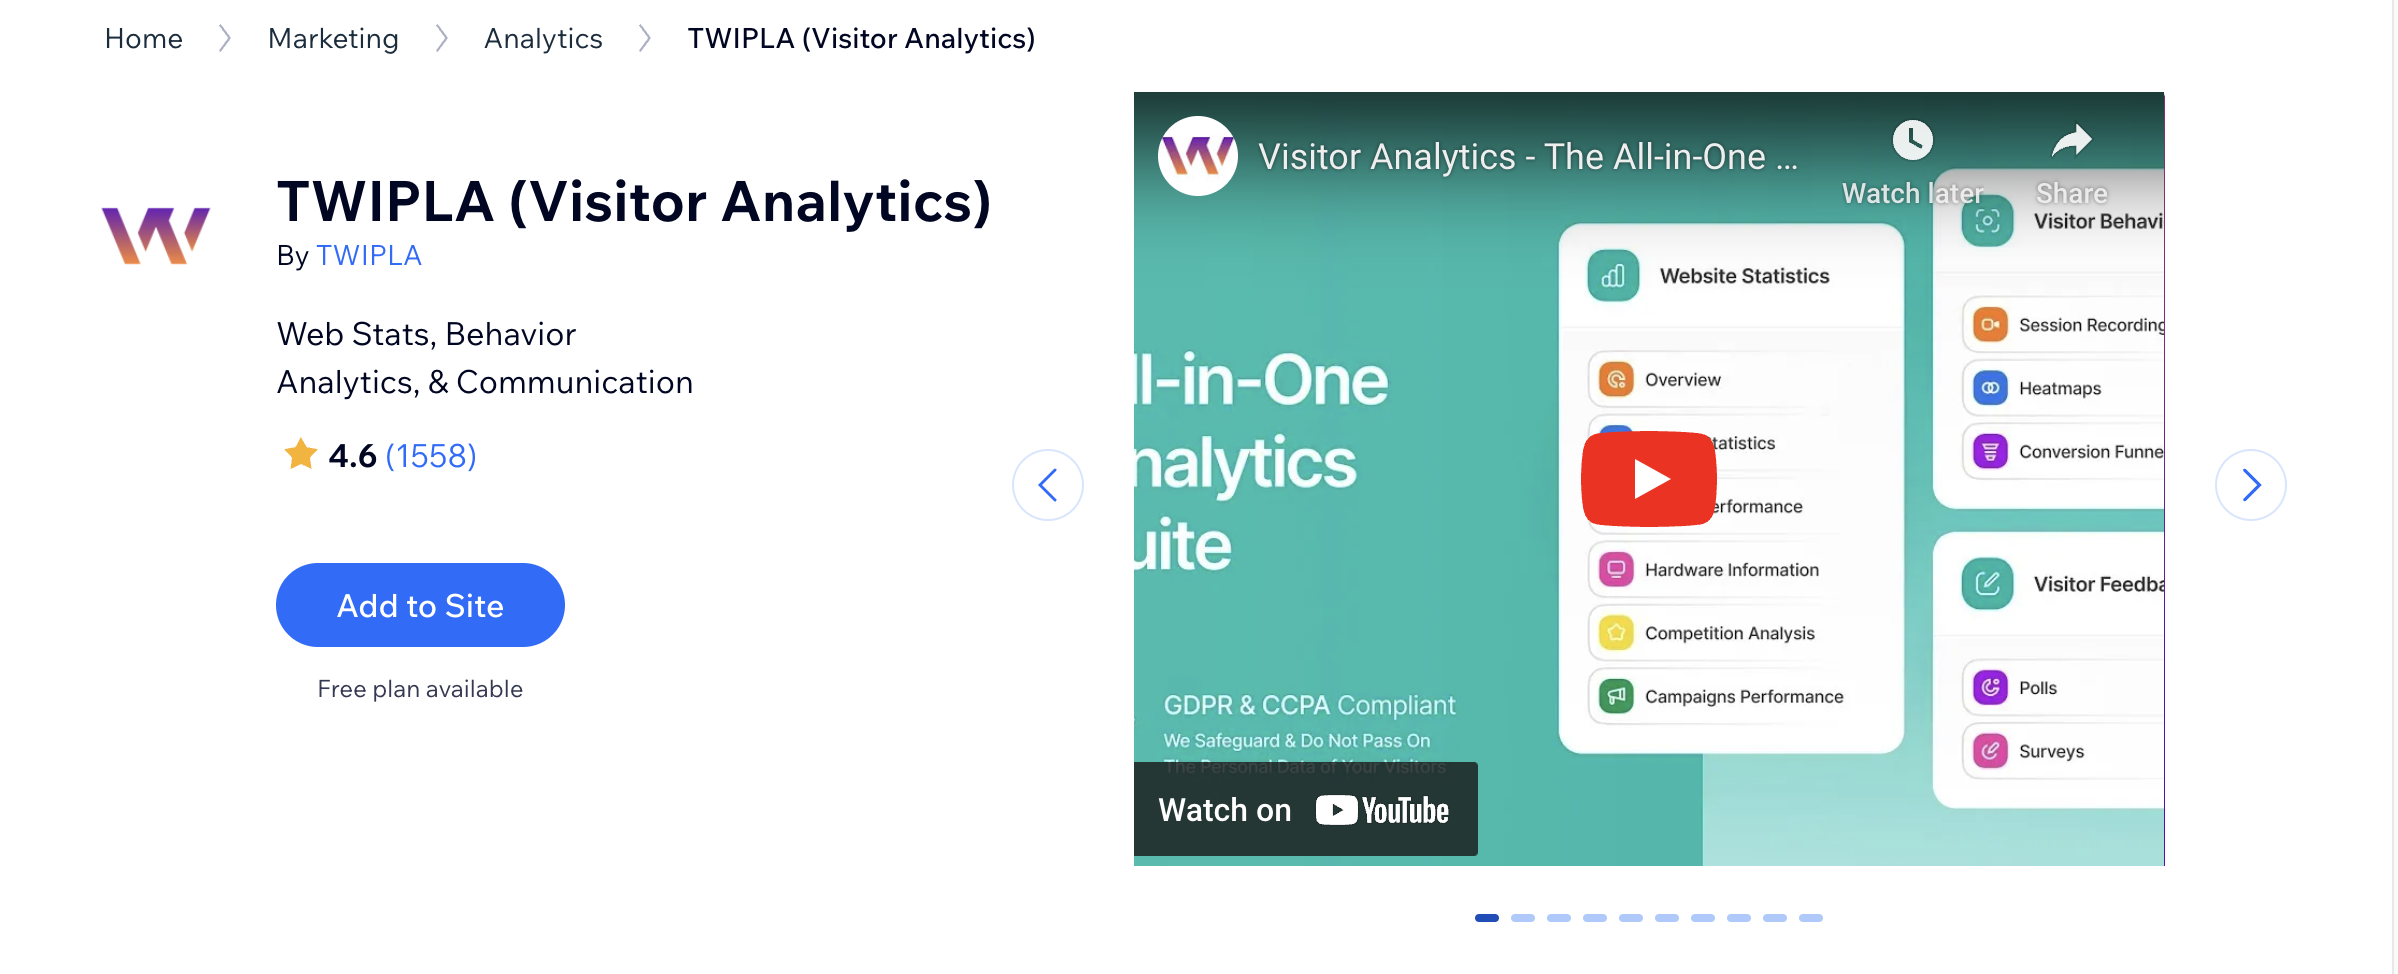 TWIPLA Visitor Analytics